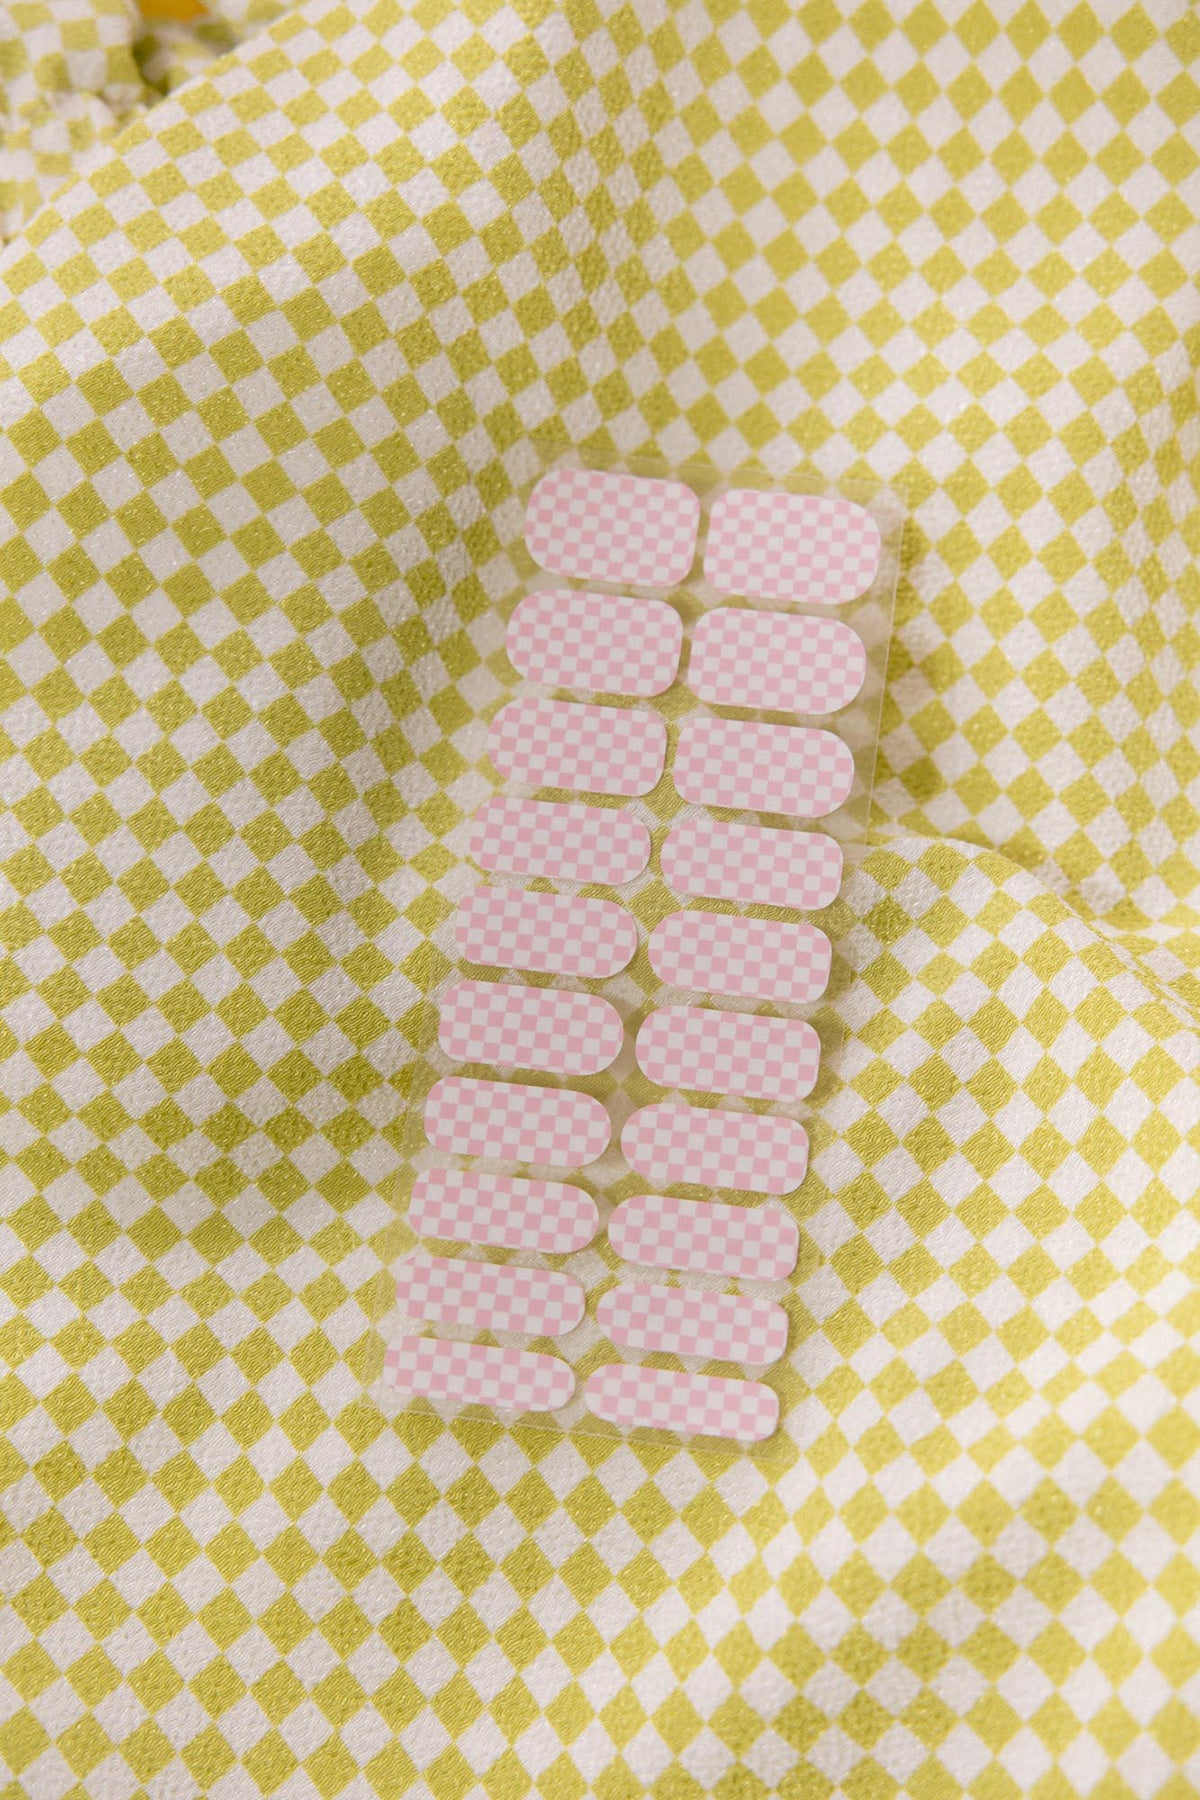 KkCo x ilovecreatives x Sticki Nail Wraps in Pink Checker